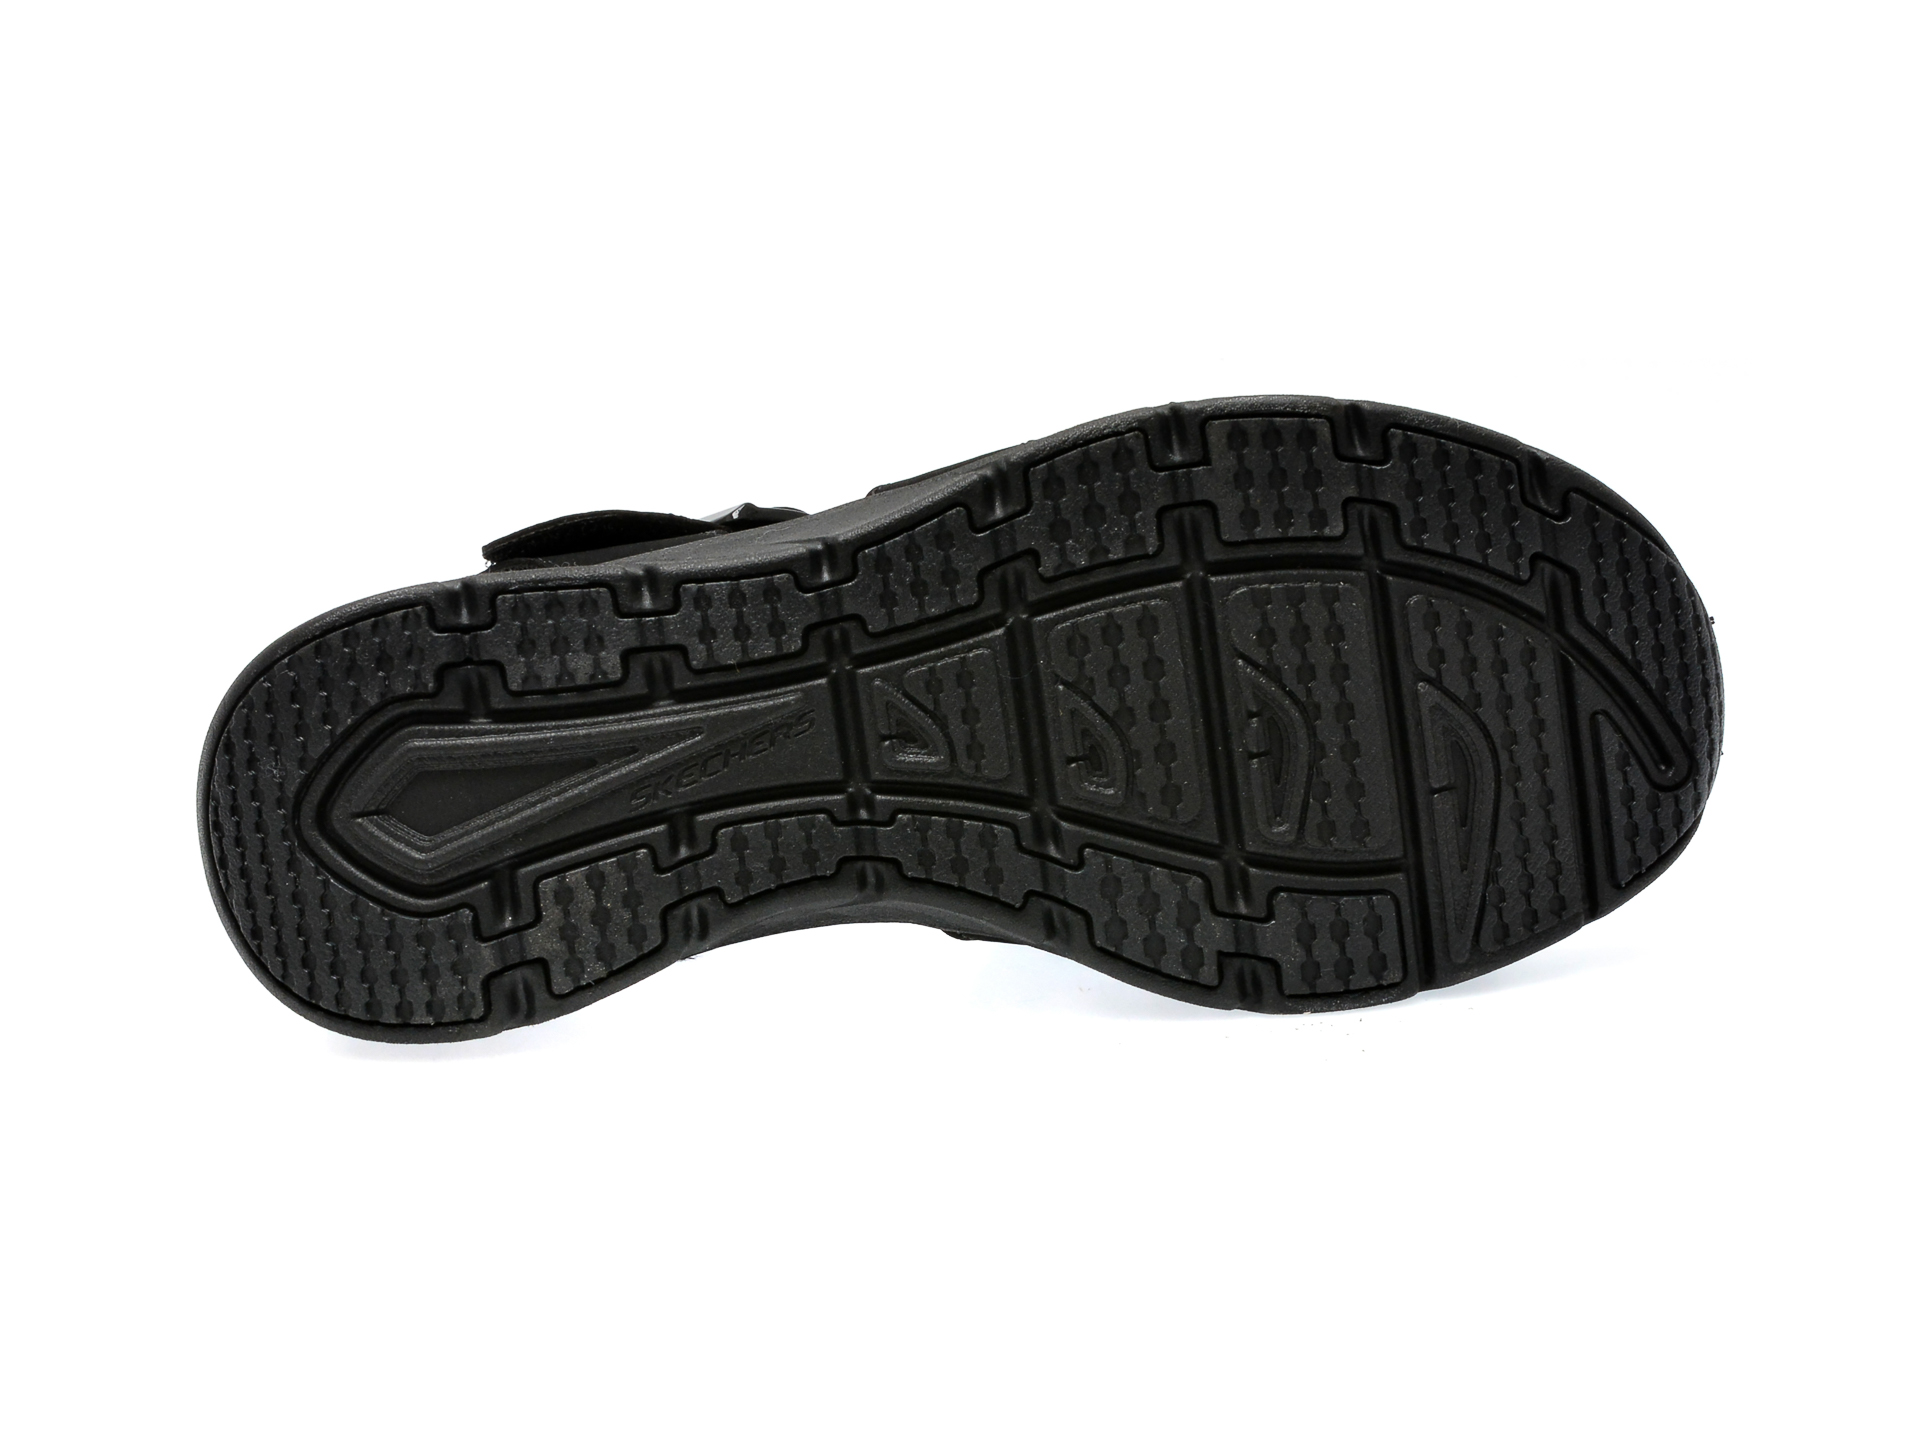 Sandale SKECHERS negre, D LUX WALKER, din piele ecologica